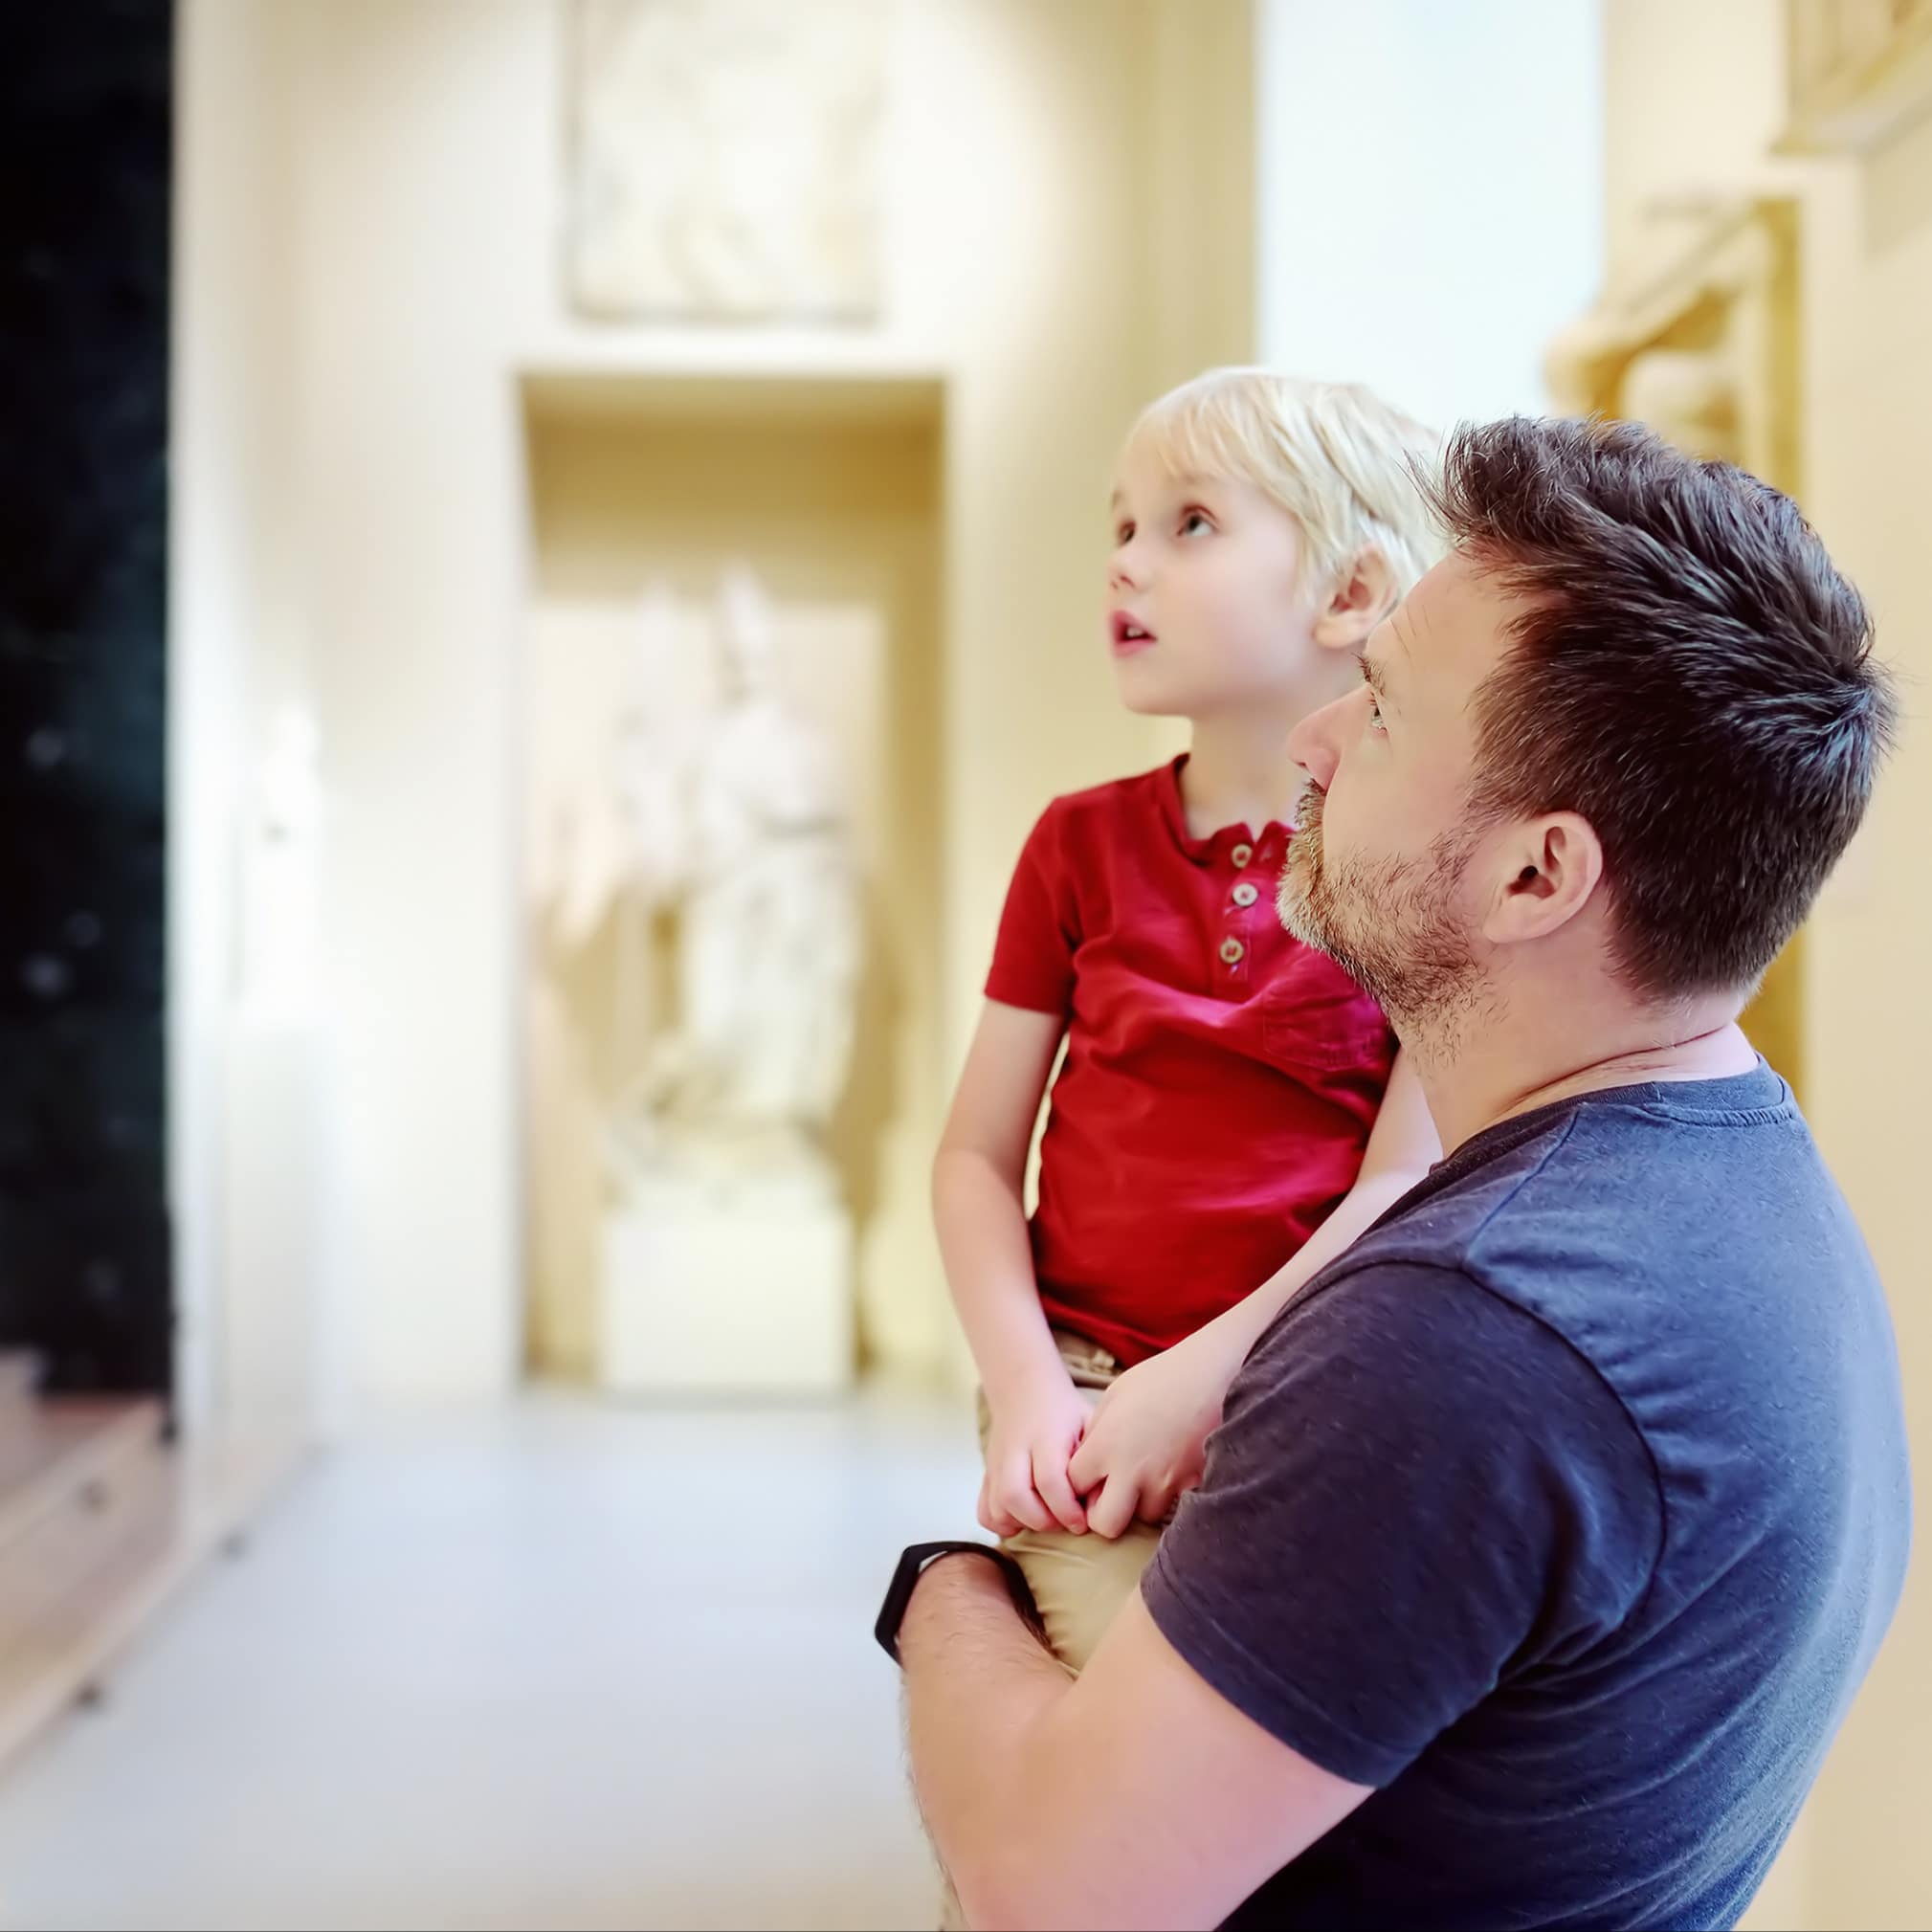 Vater trägt seinen Sohn auf dem Arm, beide schauen Statuen in einem Museum an.  Image URL: 